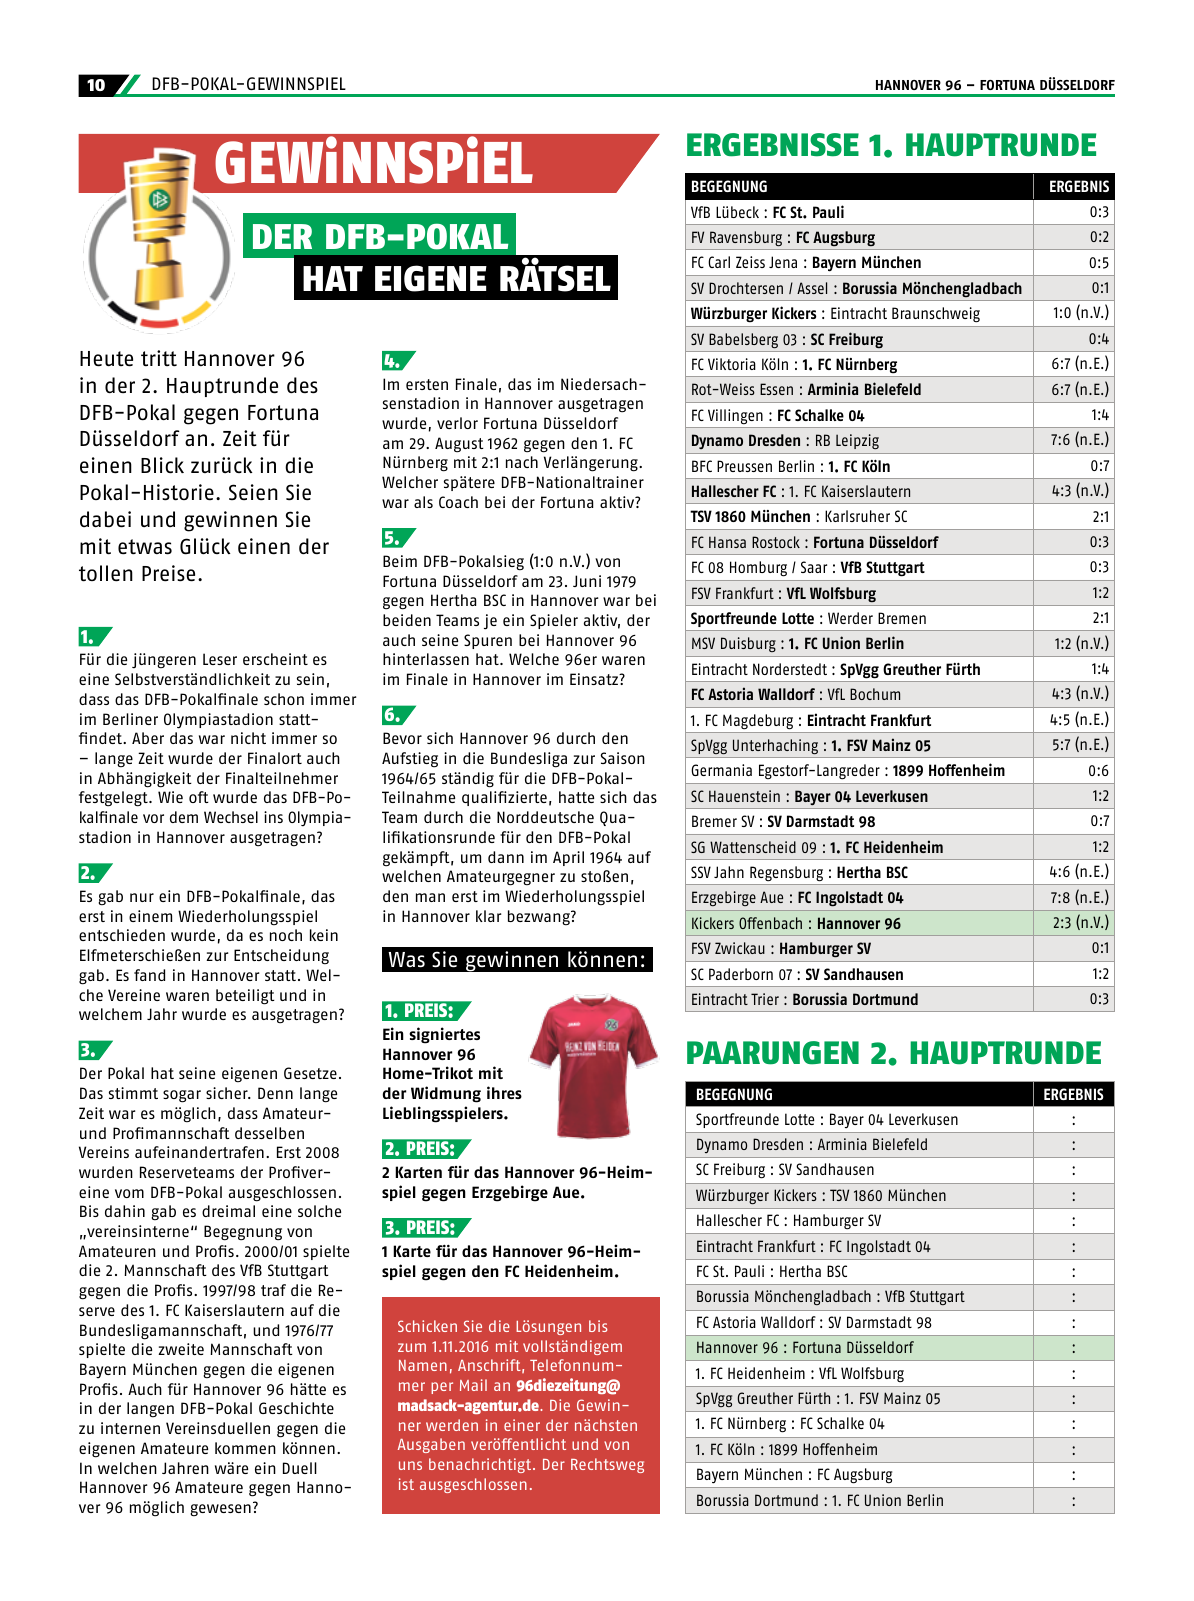 Vorschau 96-Die-Zeitung-DFB2-2016 Seite 10